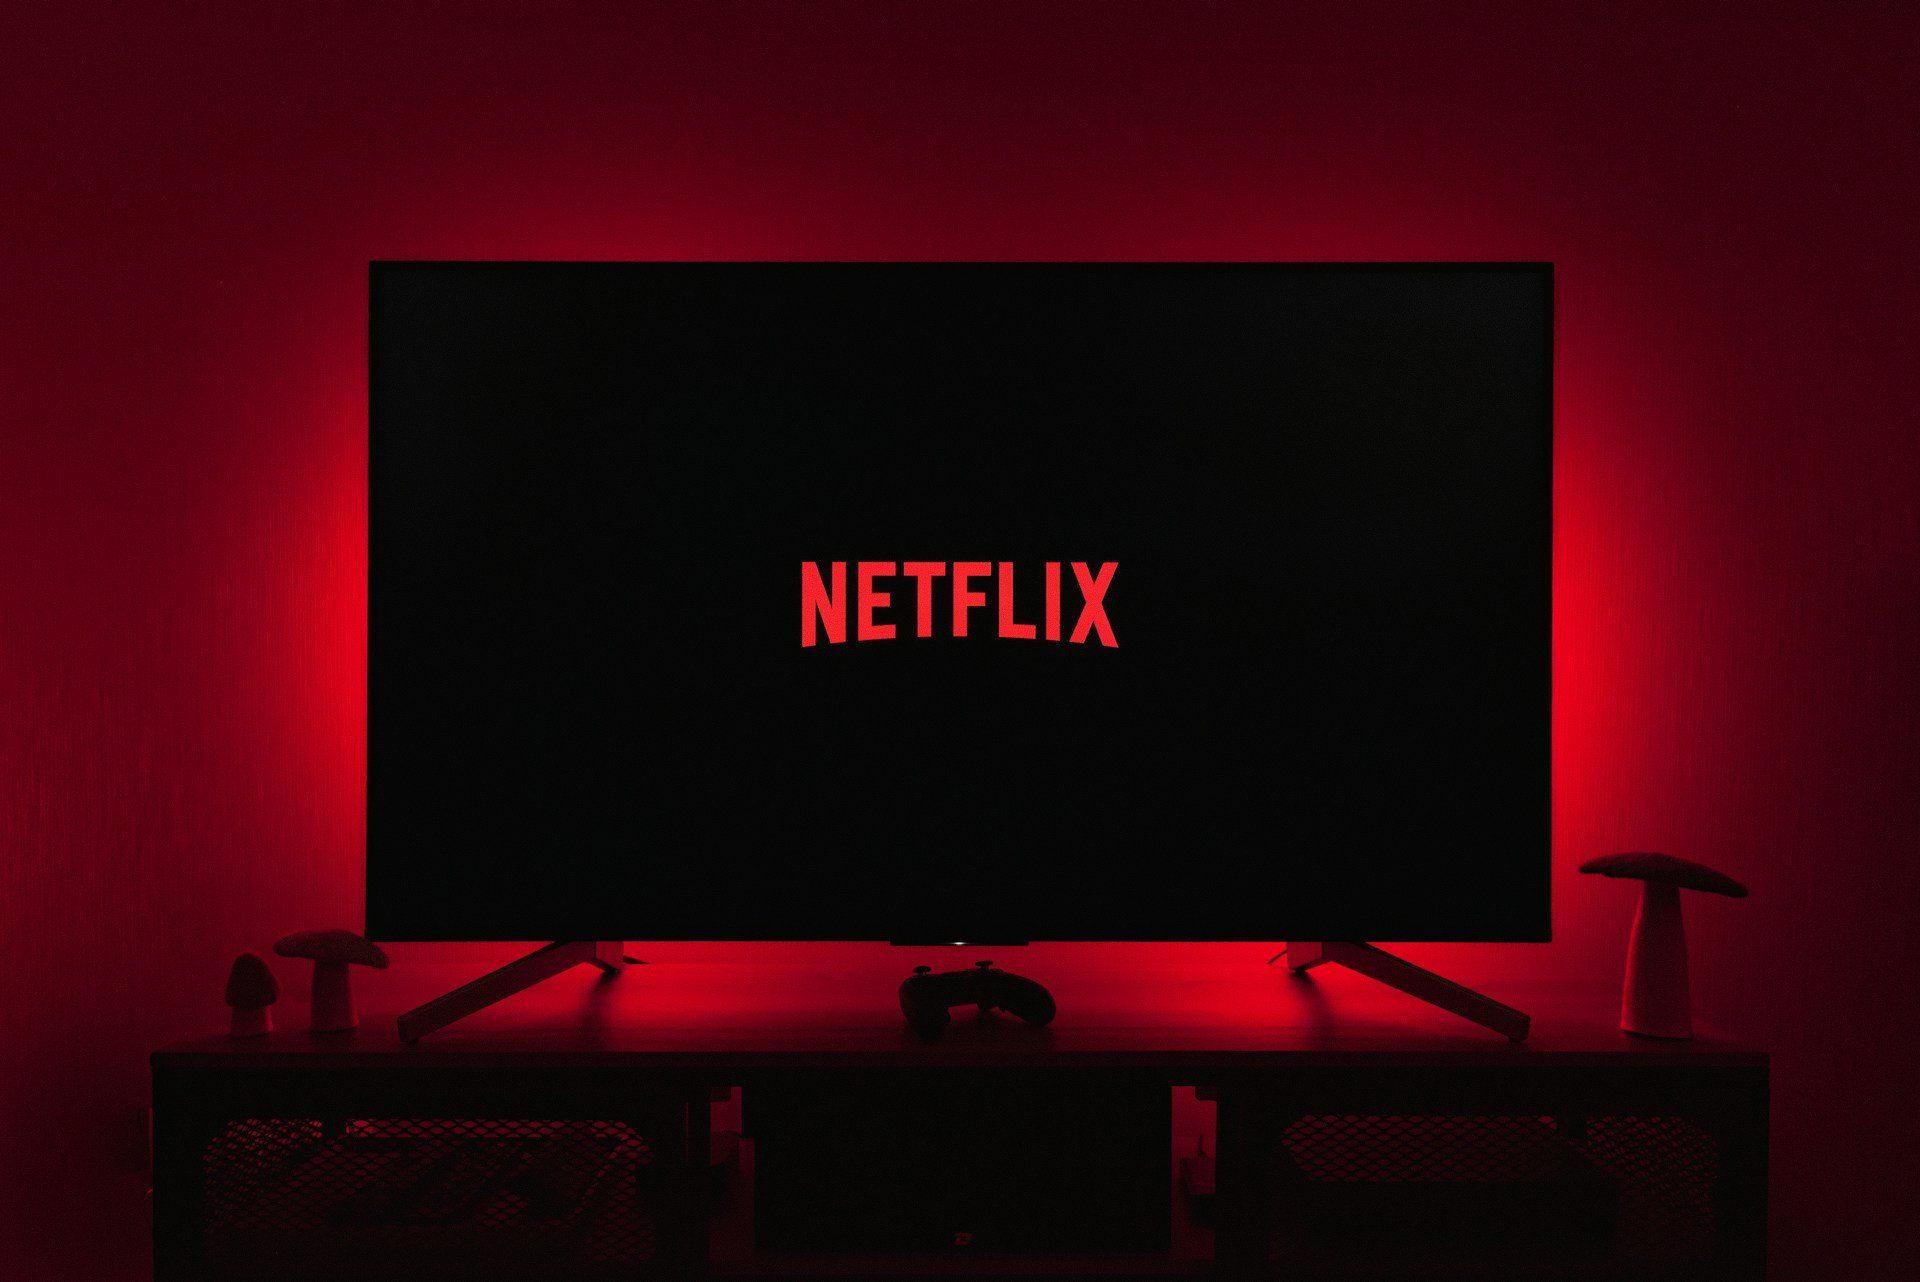 Netflix logója egy tévé képernyőjén